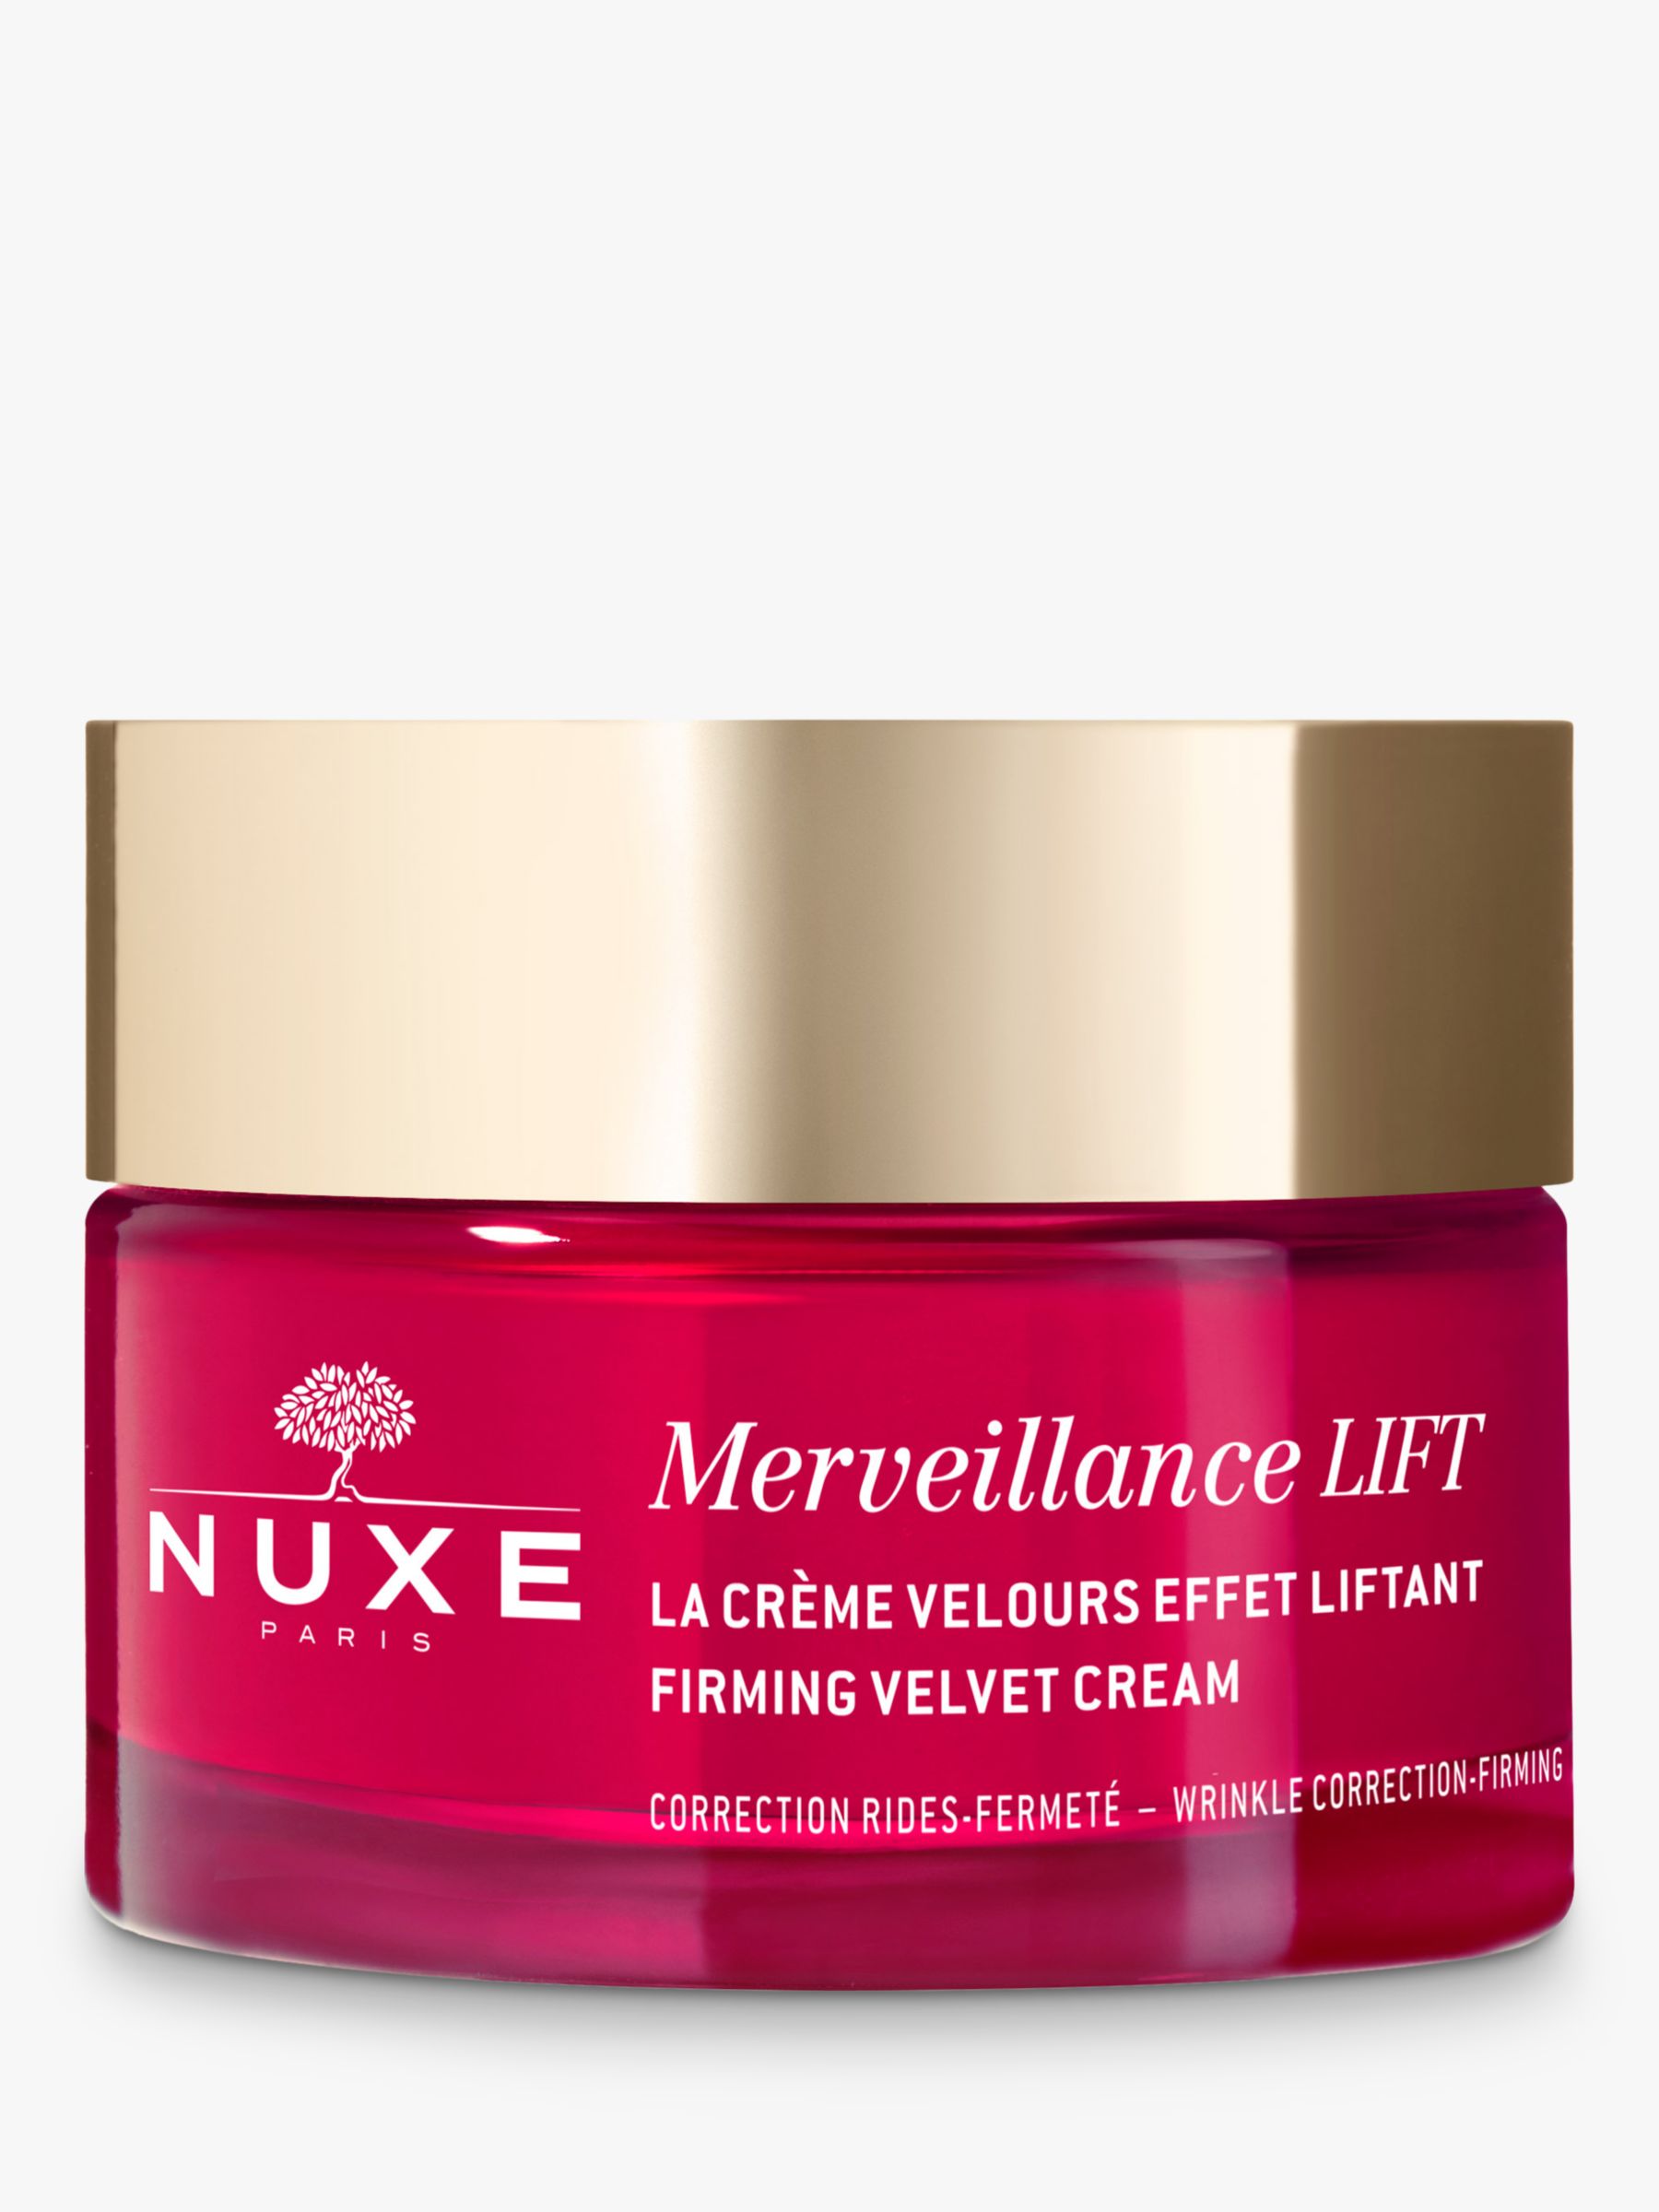 NUXE Merveillance® LIFT Firming Velvet Cream, 50ml 1